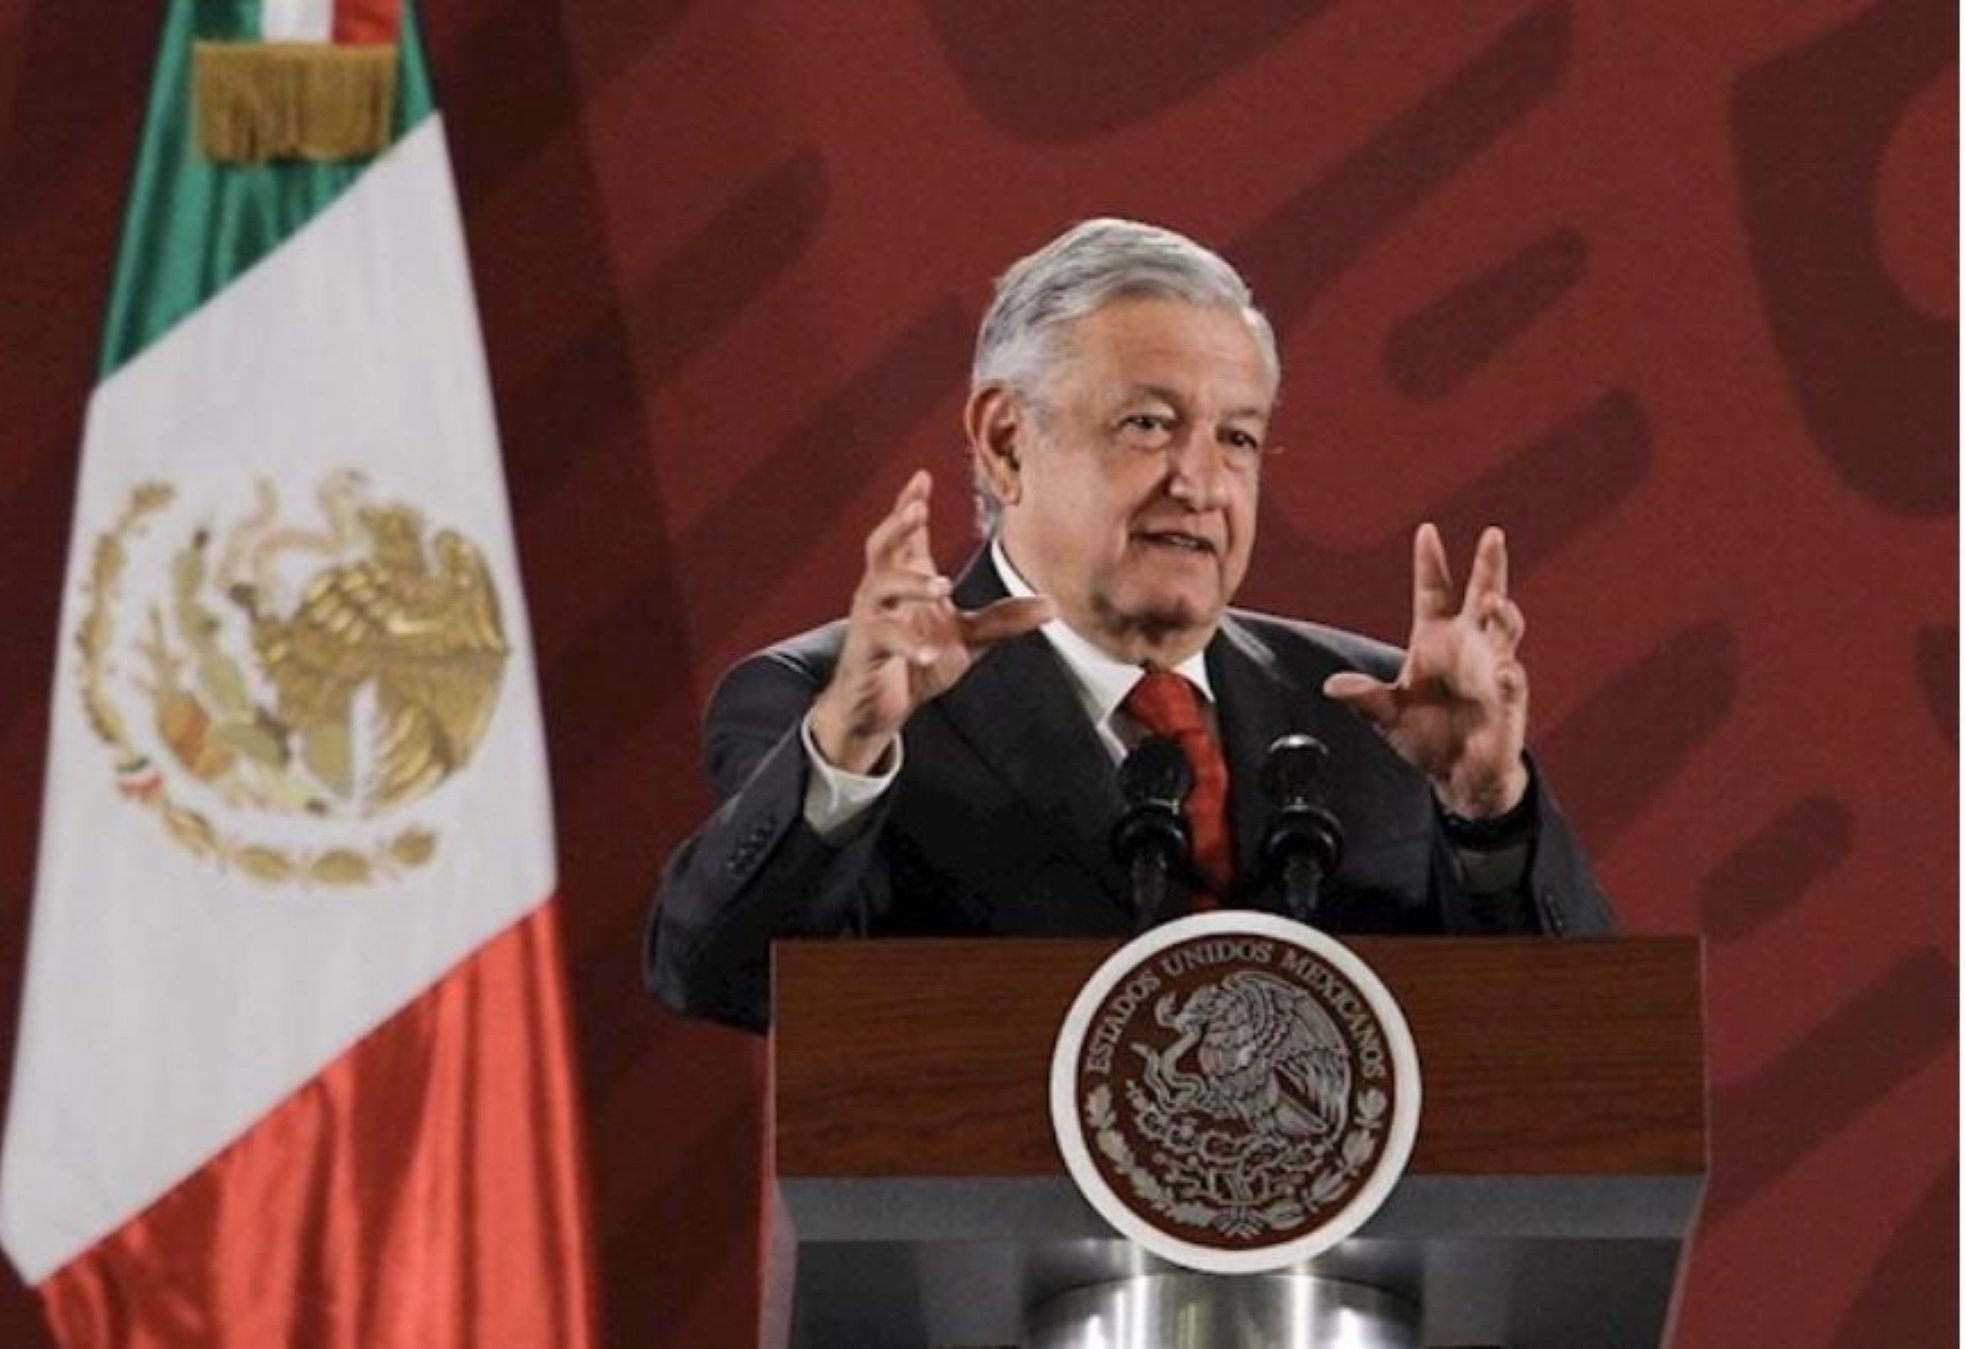 El president de Mèxic torna a pressionar Espanya: "Demanin perdó"